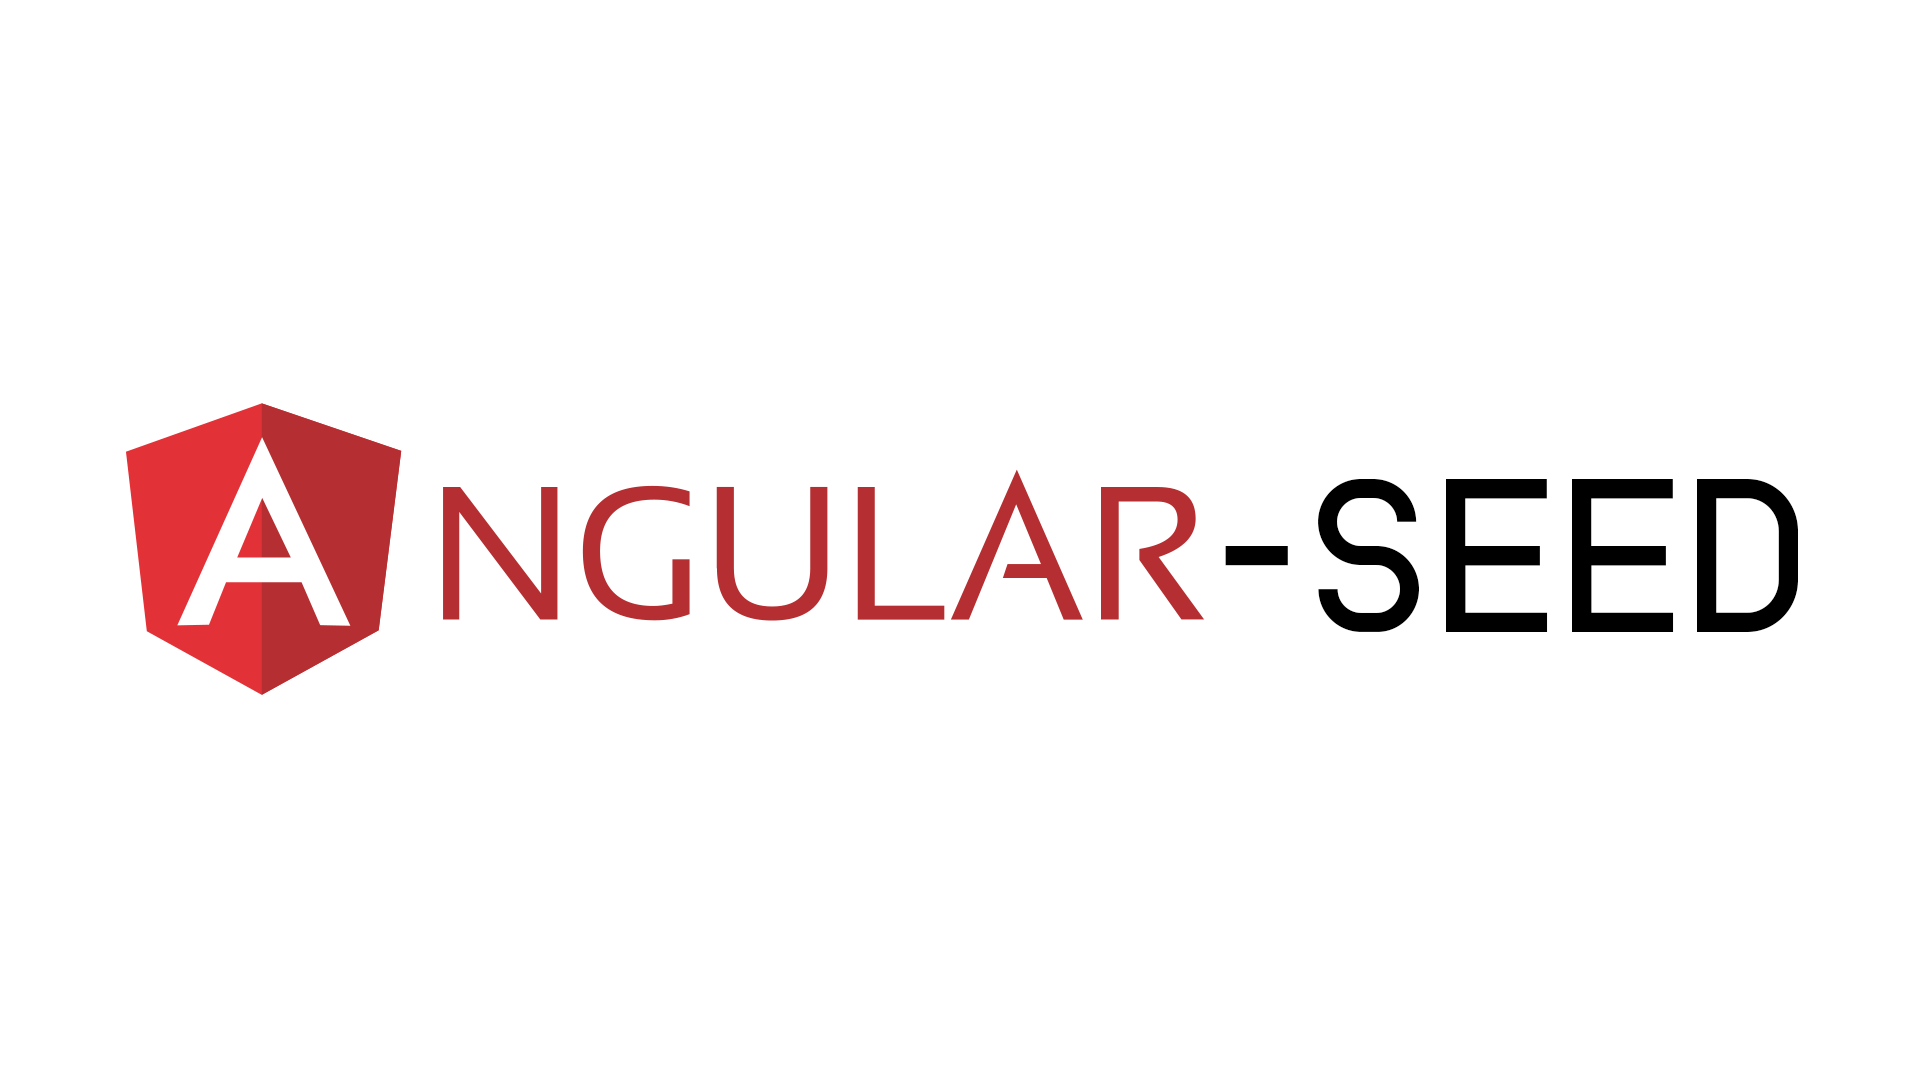 Czy praca w Angularze może być prosta i efektywna? Kilka słów o narzędziu Angular-Seed rozwijanym przez Comarch